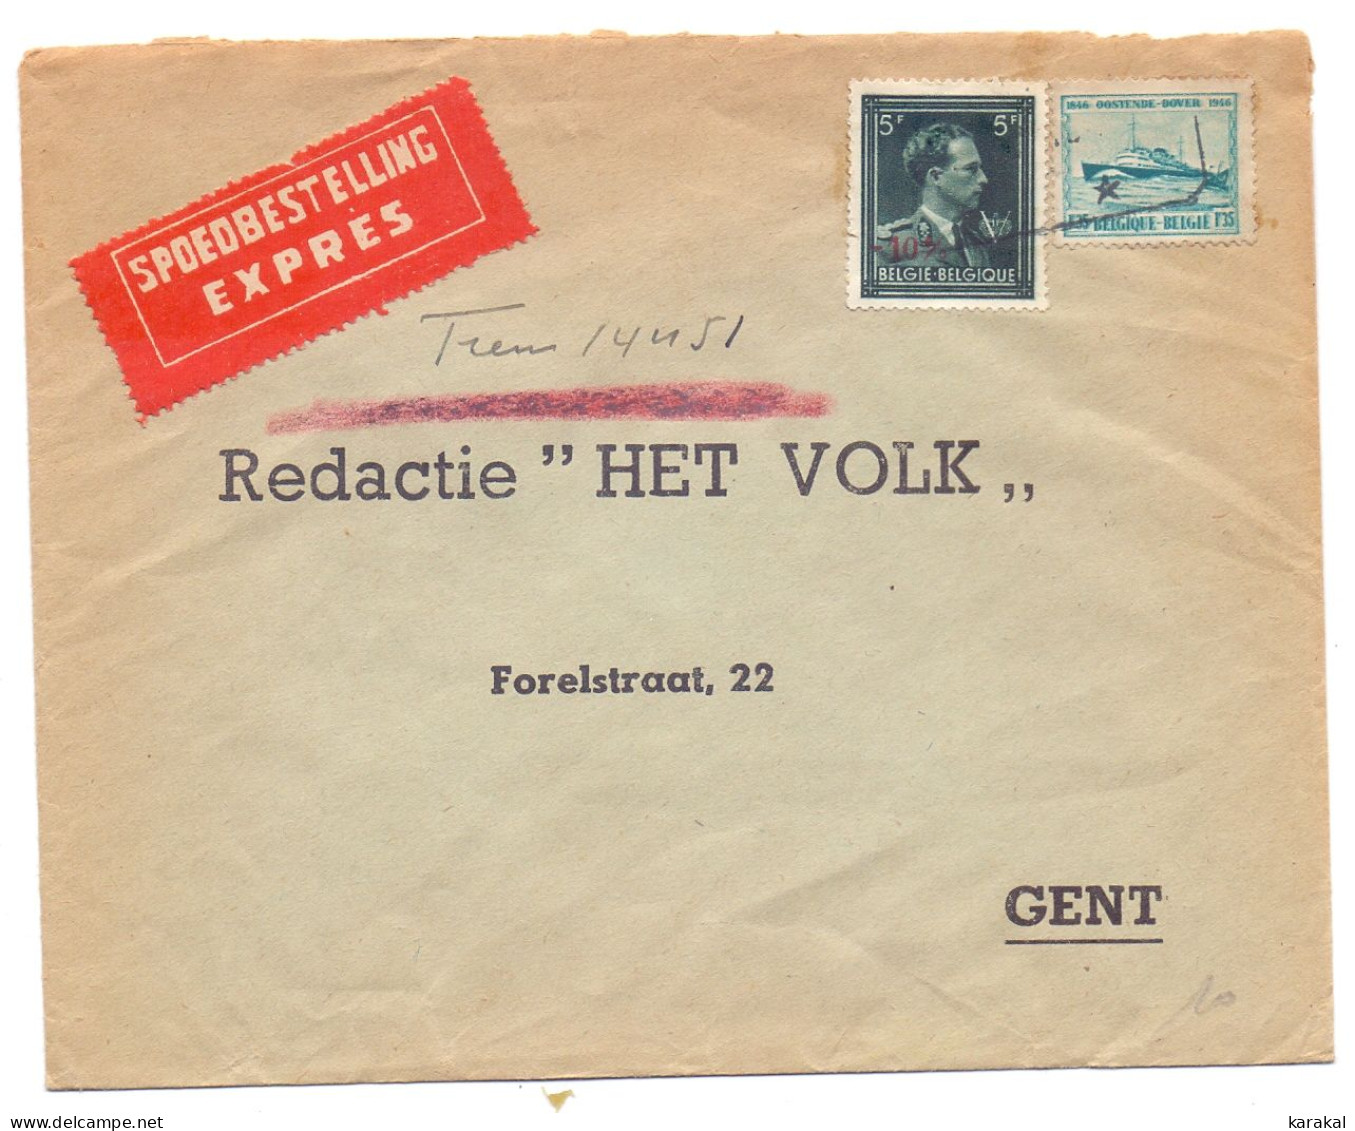 Belgique 724T Moins 10% Surcharge Générale 725 Bateau Boat Ostende-Douvre Lettre Express Het Volk Vers Gand - 1946 -10%